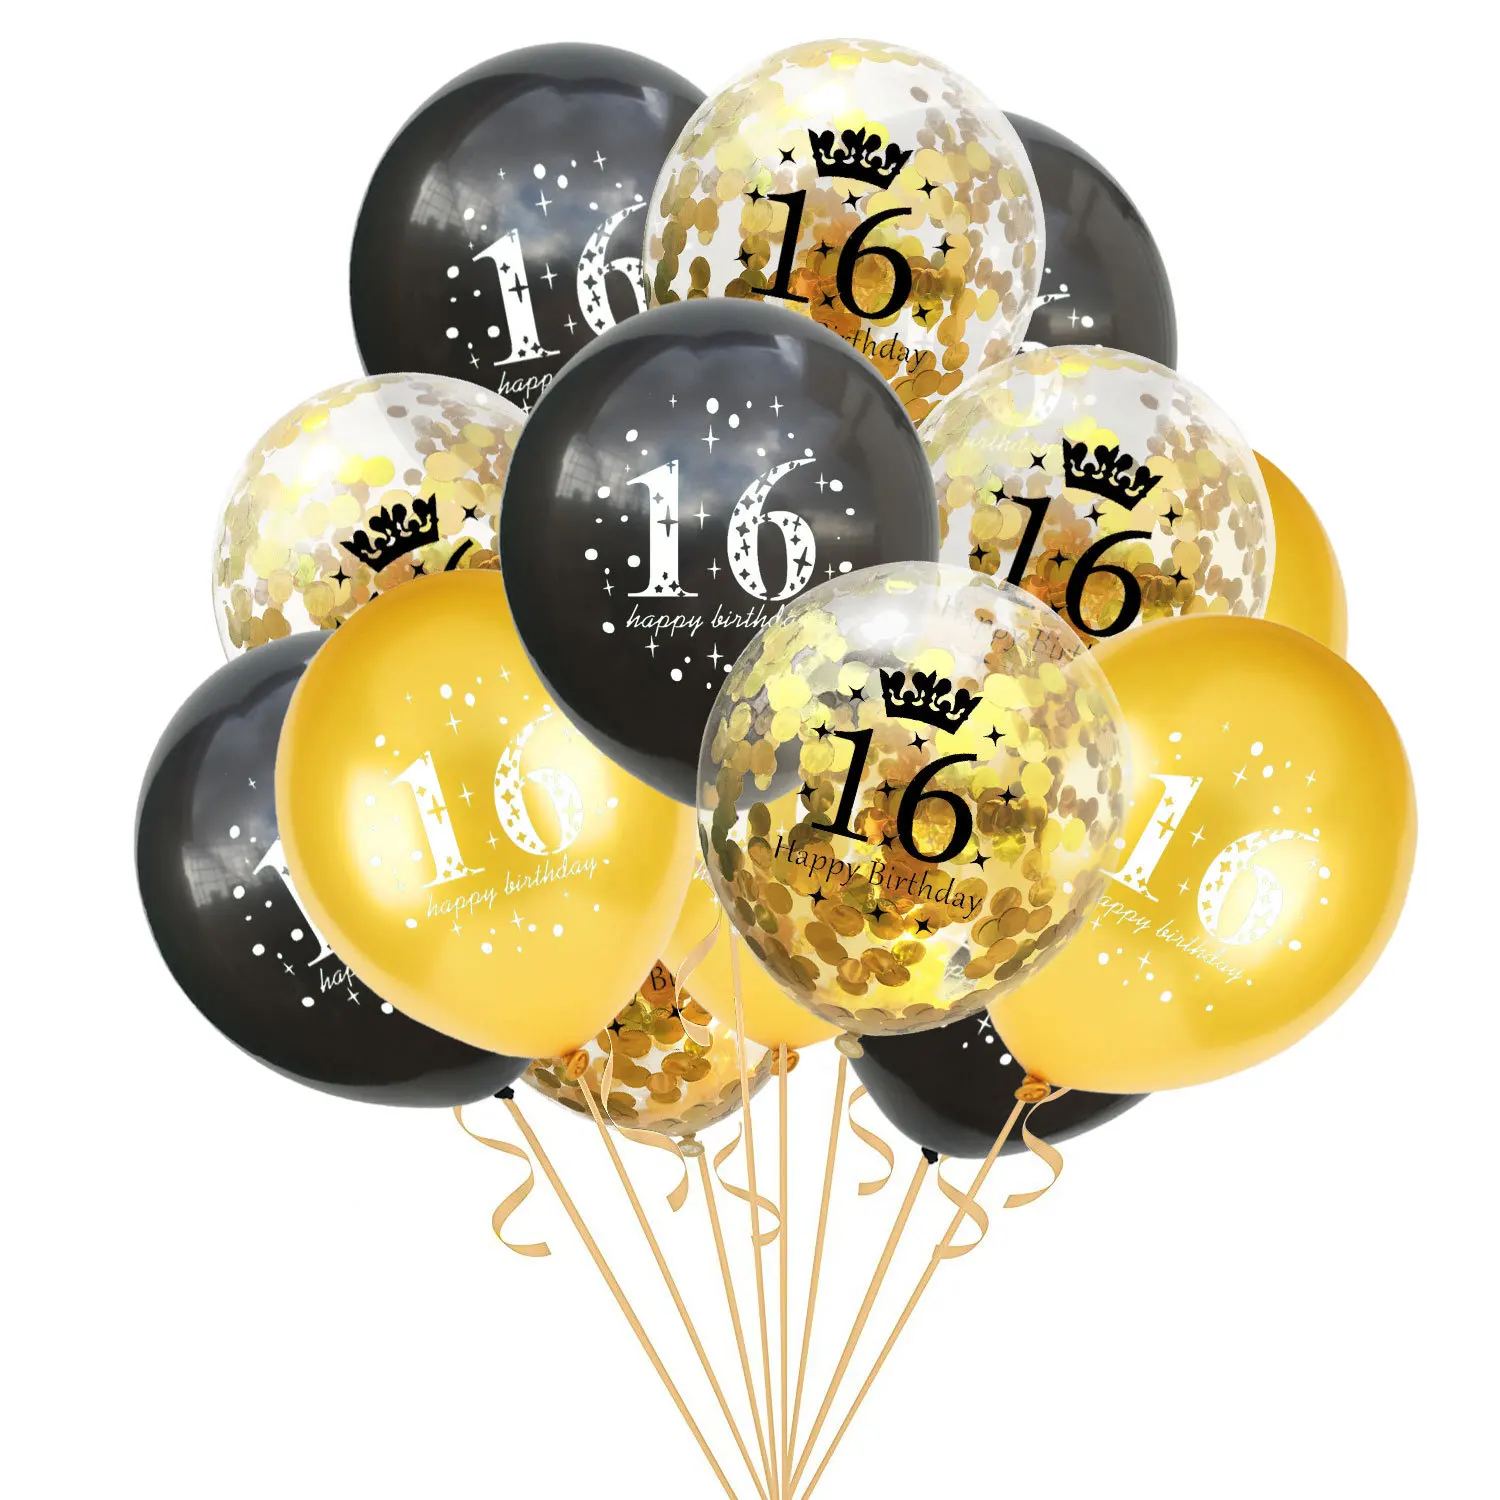 15 шт. 12 дюймов 16 18 30 40 50 60 лет конфетти-блестки набор воздушных шаров для взрослых День рождения украшения - Цвет: 16-16